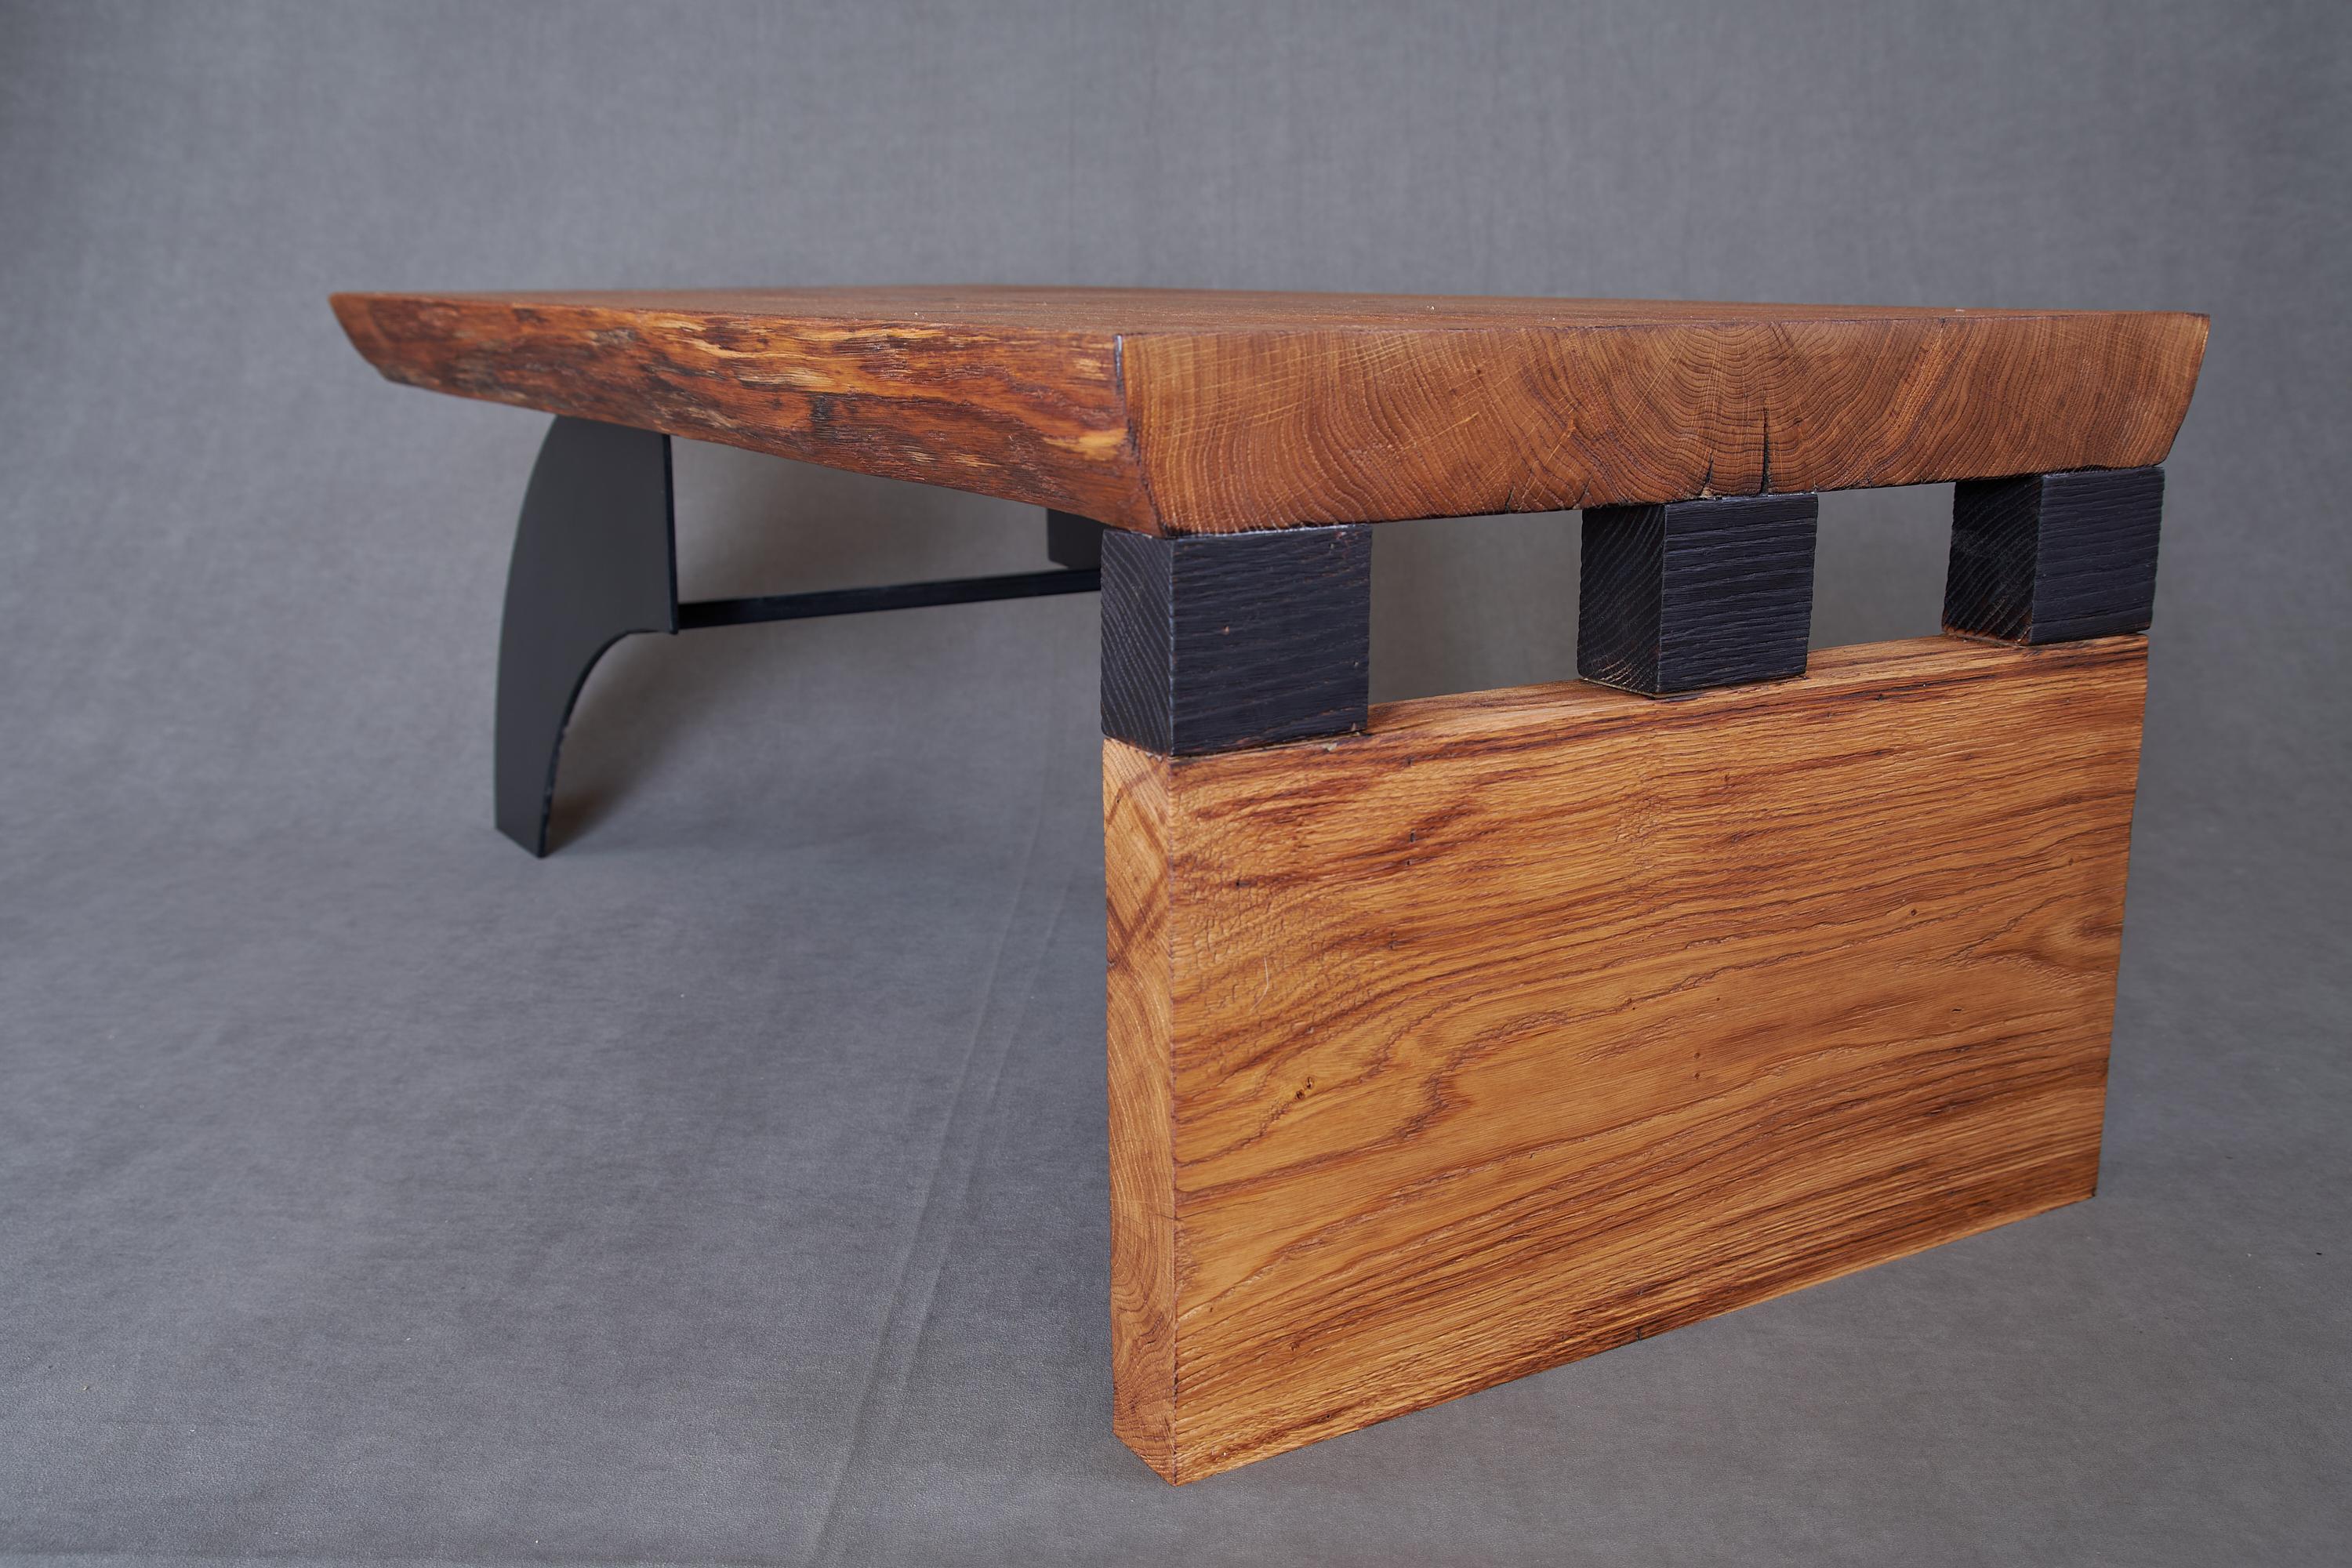 Steel Massive oak Coffee Table, Contemporary Original Design, Logniture For Sale